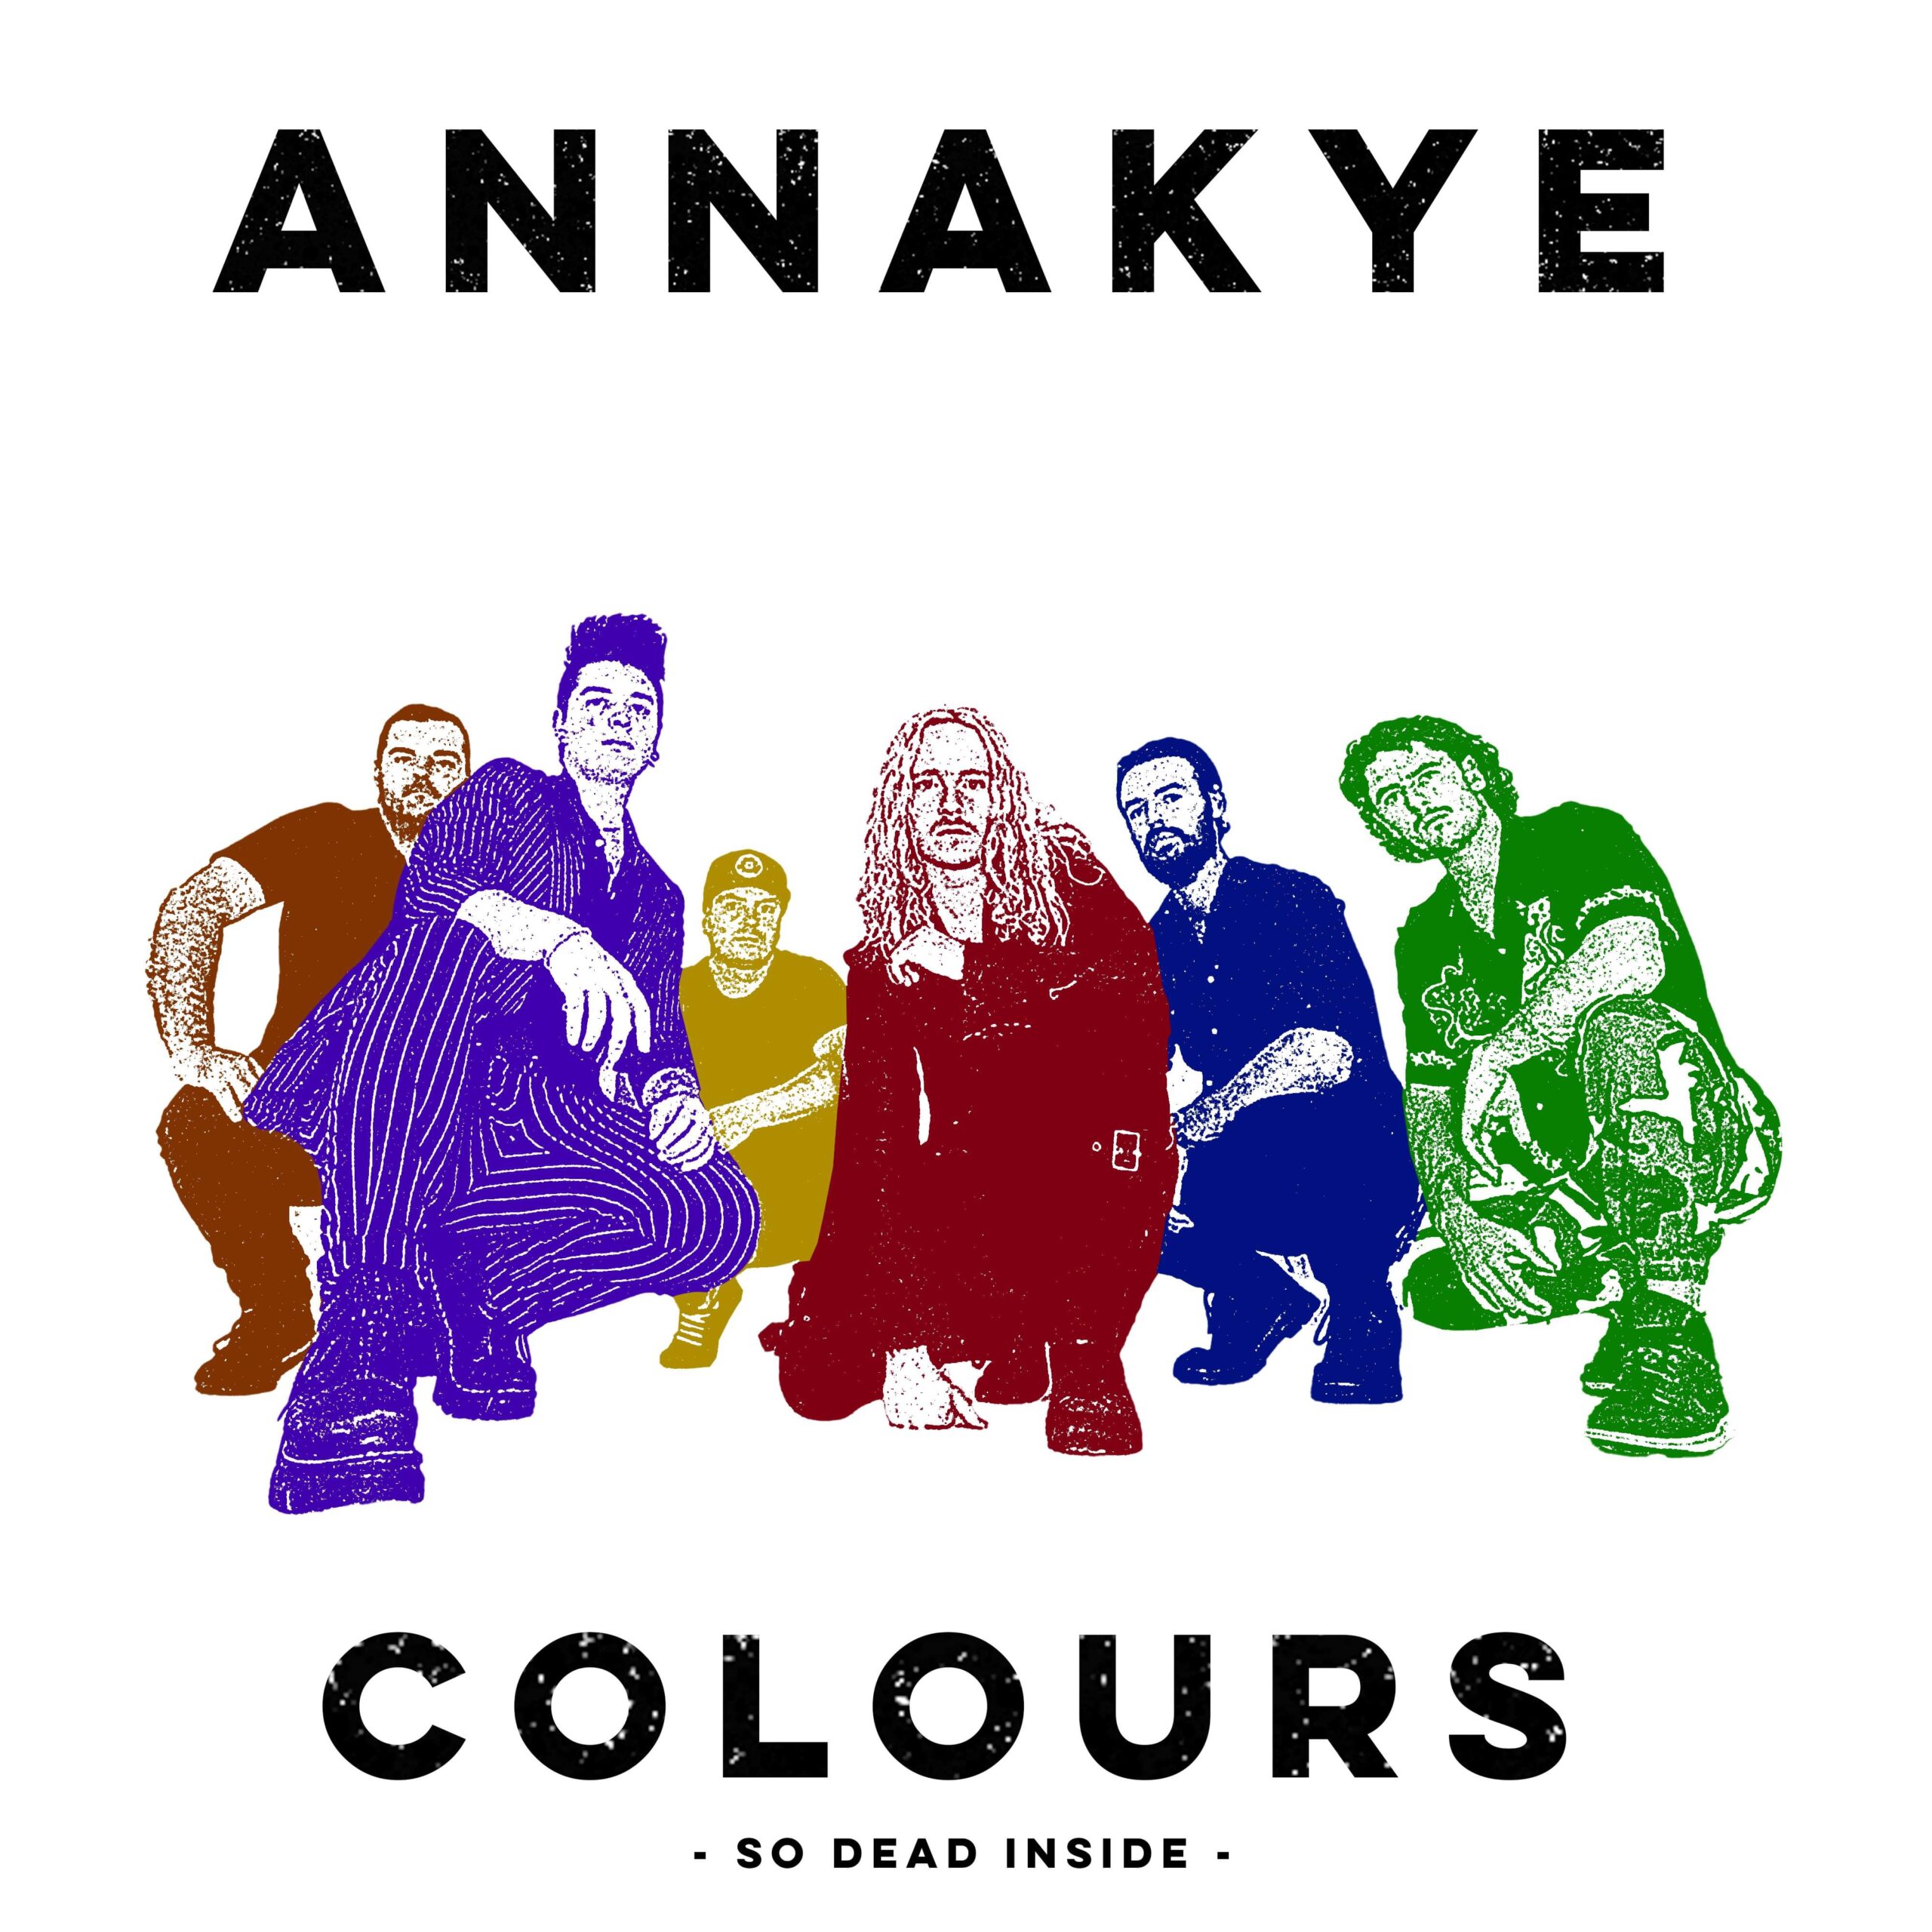  Descubre los Nuevos Singles Musicales: Desde el Punk Rock de ANNAKYE hasta el Pop Reflexivo de Cameron Sage